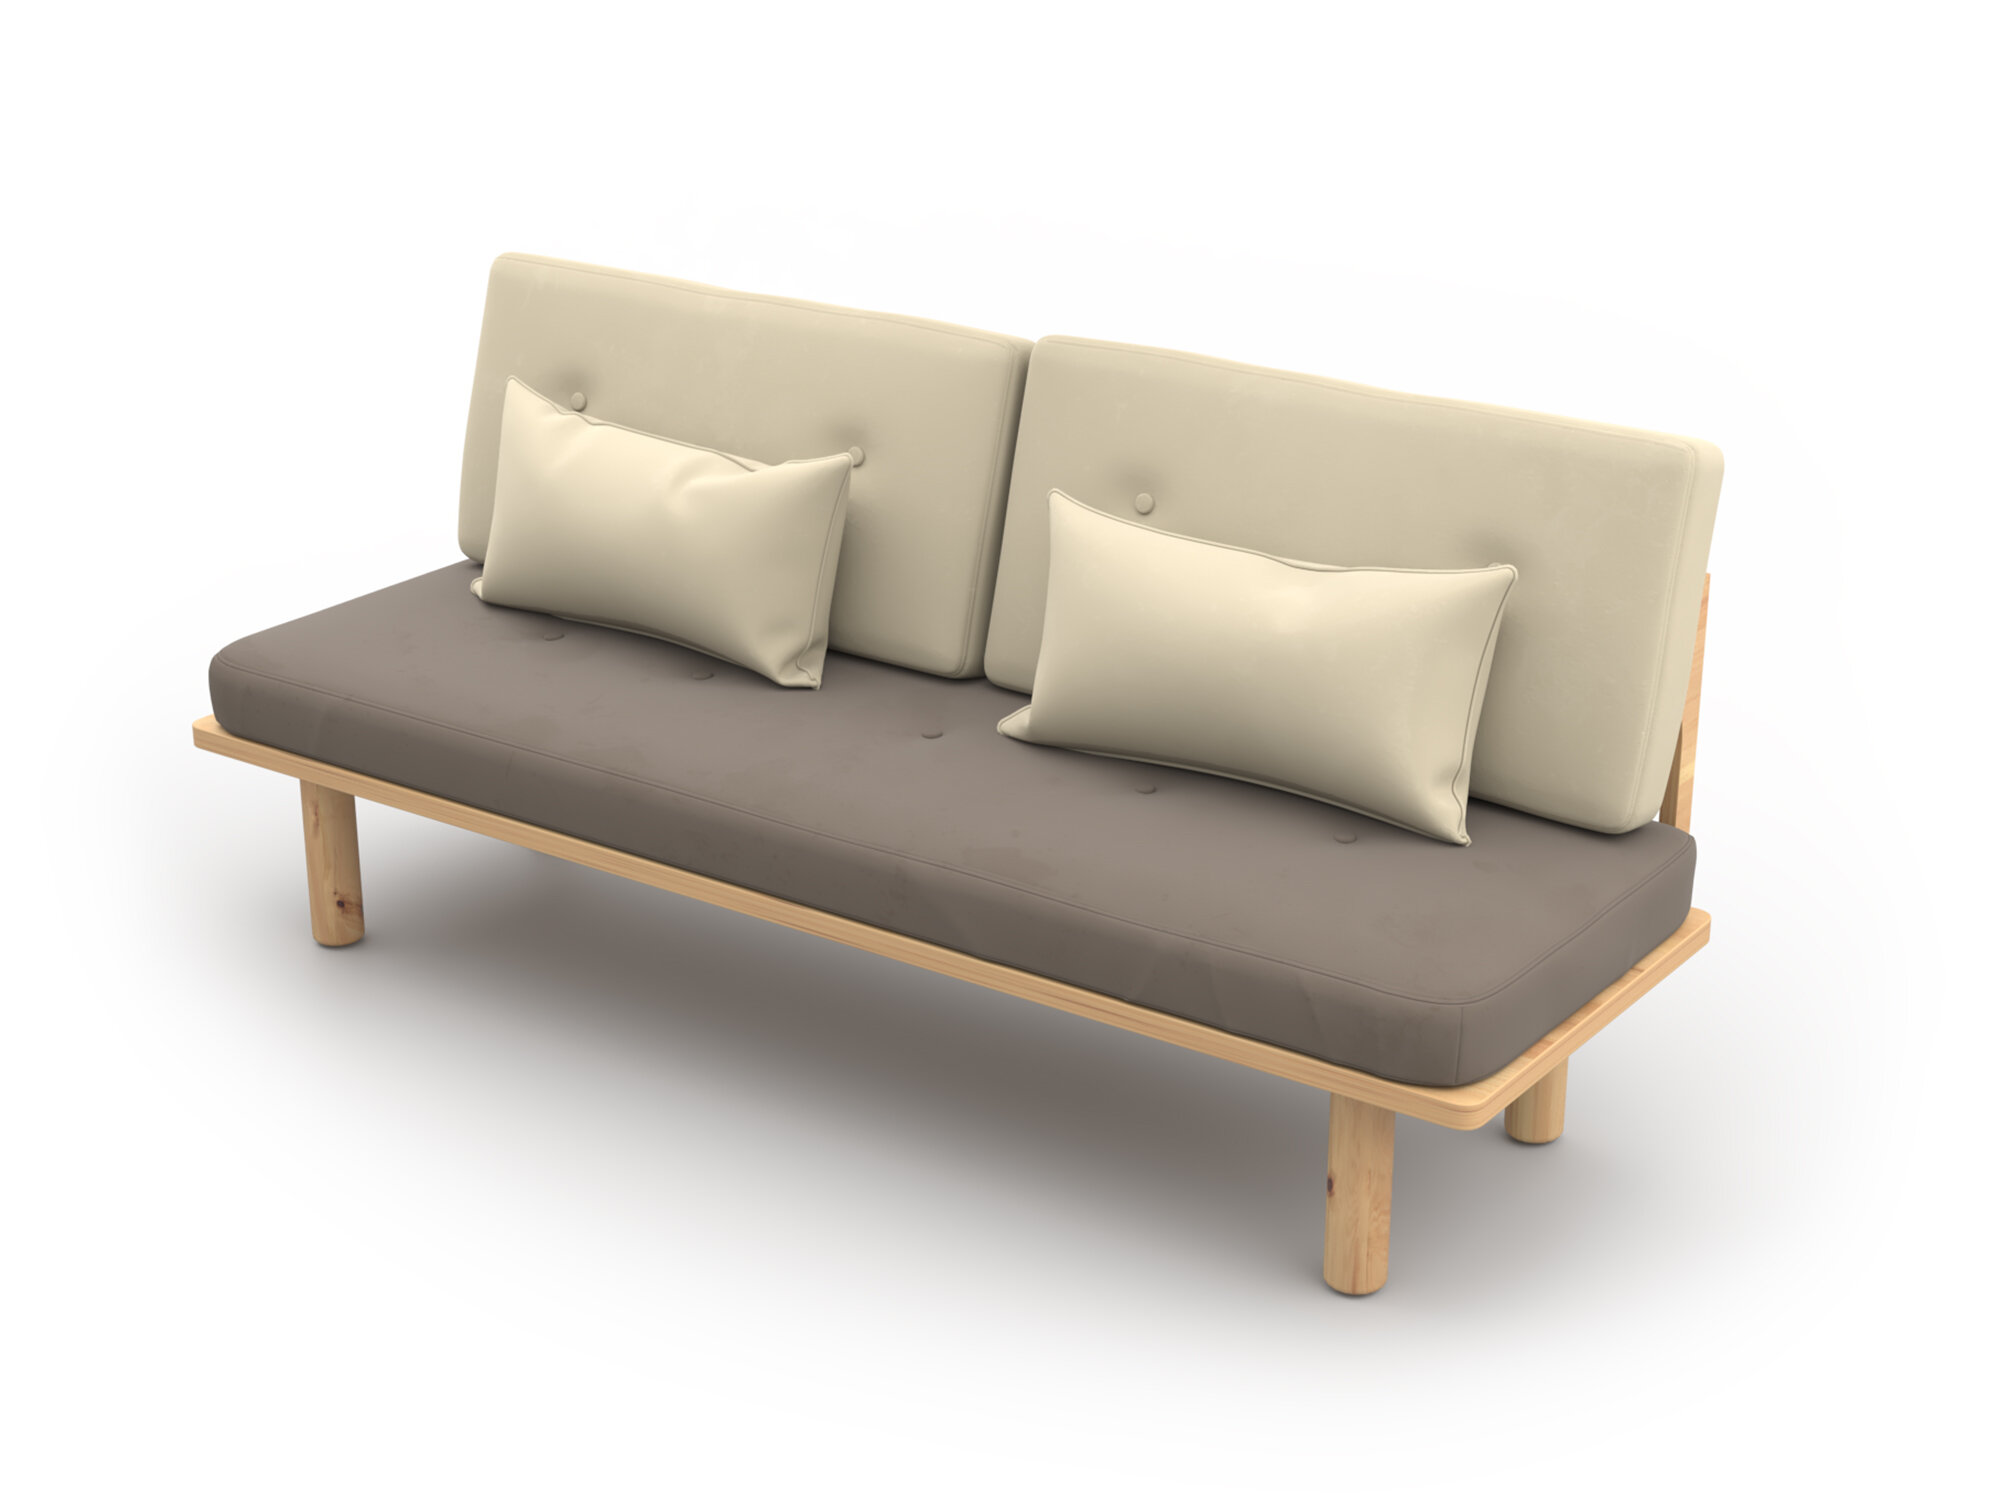 Деревянный диван кушетка Soft Element Троя, велюр, коричневый, стиль скандинавский лофт, на кухню, в прихожую, дачный, в баню